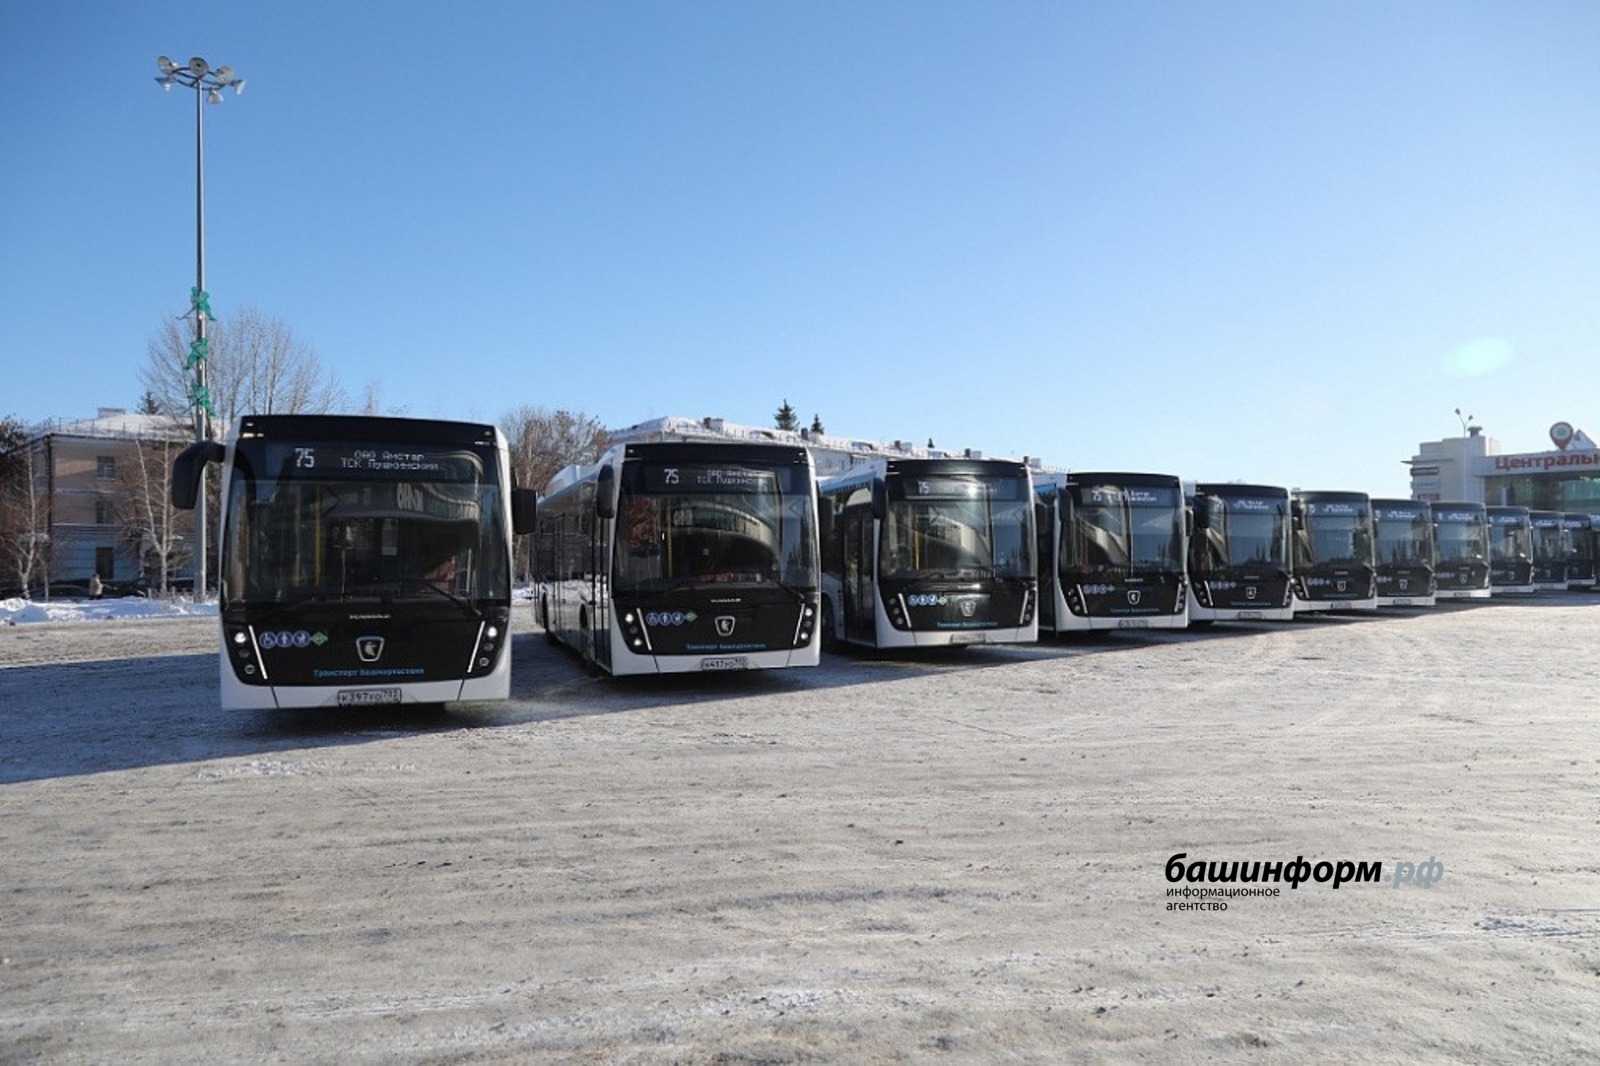 Раҫҫей регионӗсен автобус паркне икӗ ҫул хушшинче 4130 ҫӗнӗ машина пуянлатать